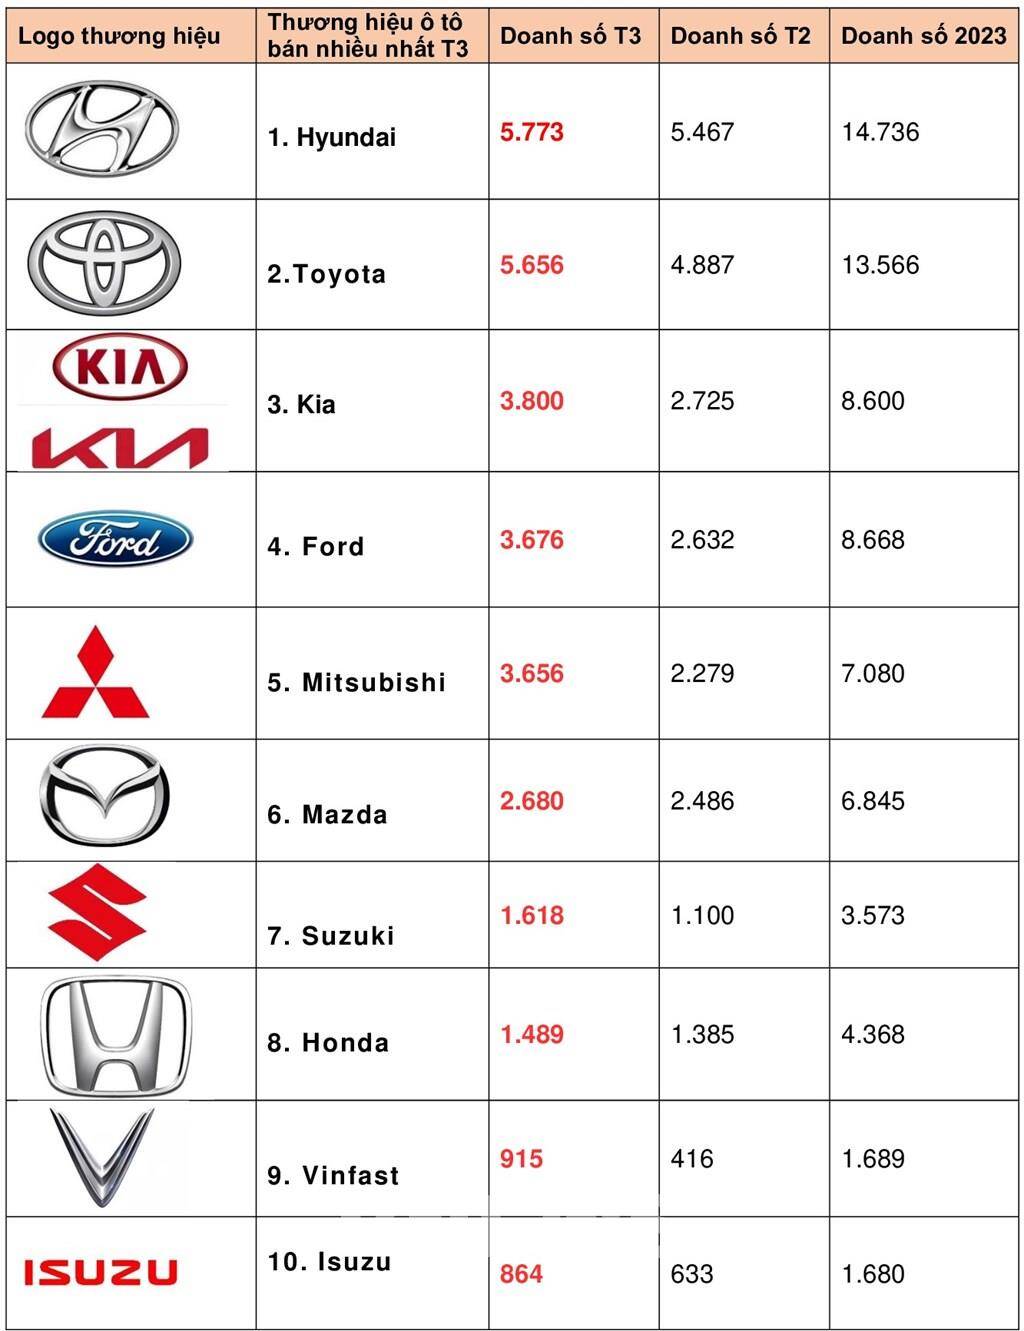 Top 10 thương hiệu ô tô bán nhiều nhất ở Việt Nam